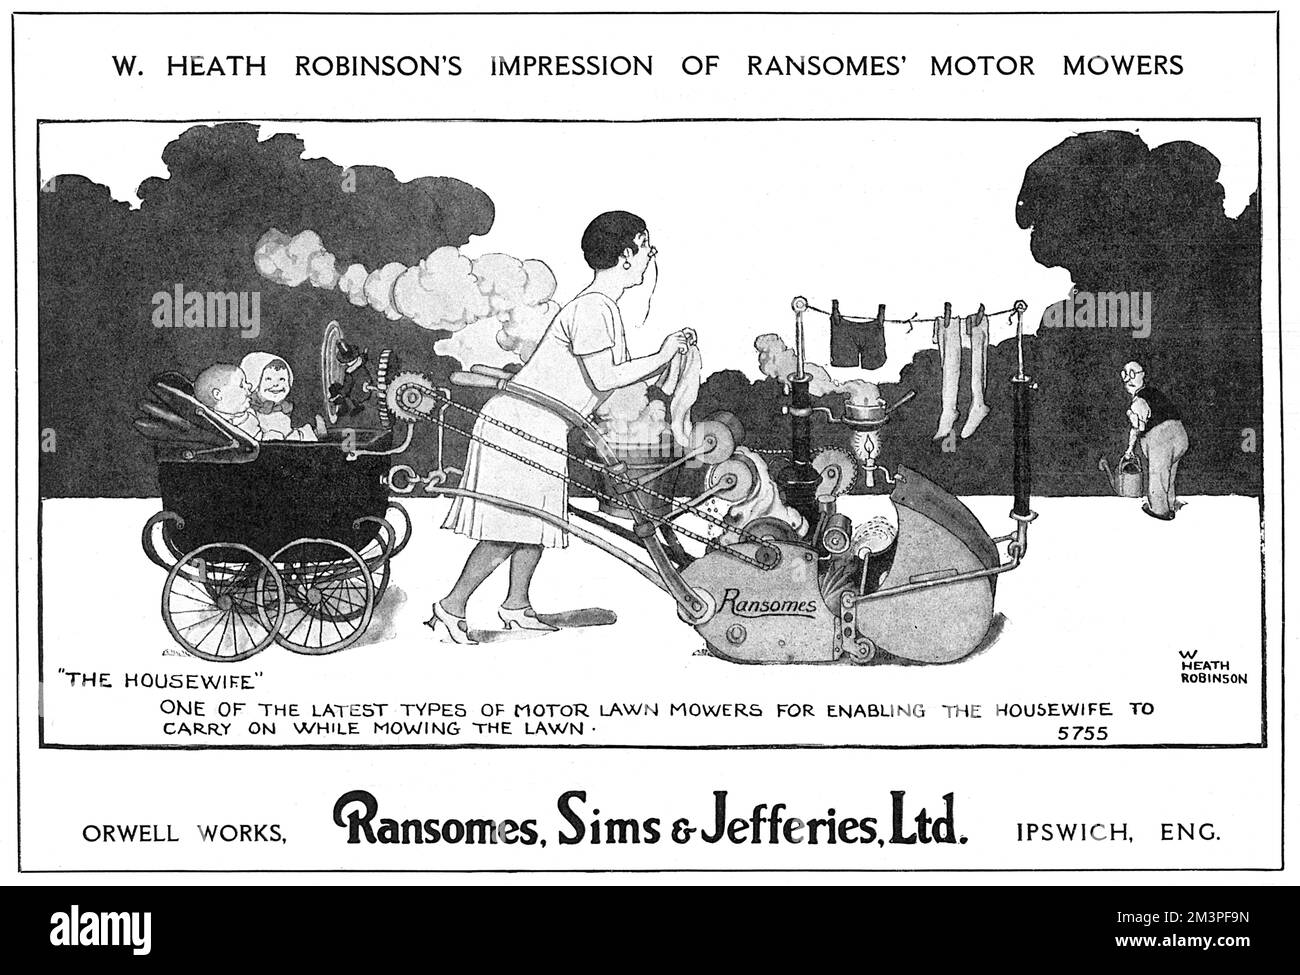 „Einer der neuesten Motorrasenmäher, mit dem die Hausfrau den Rasen weiterhin mähen kann.“ Werbung von William Heath Robinson für die motorisierten Rasenmäher von Ransomes. Datum: 1928 Stockfoto